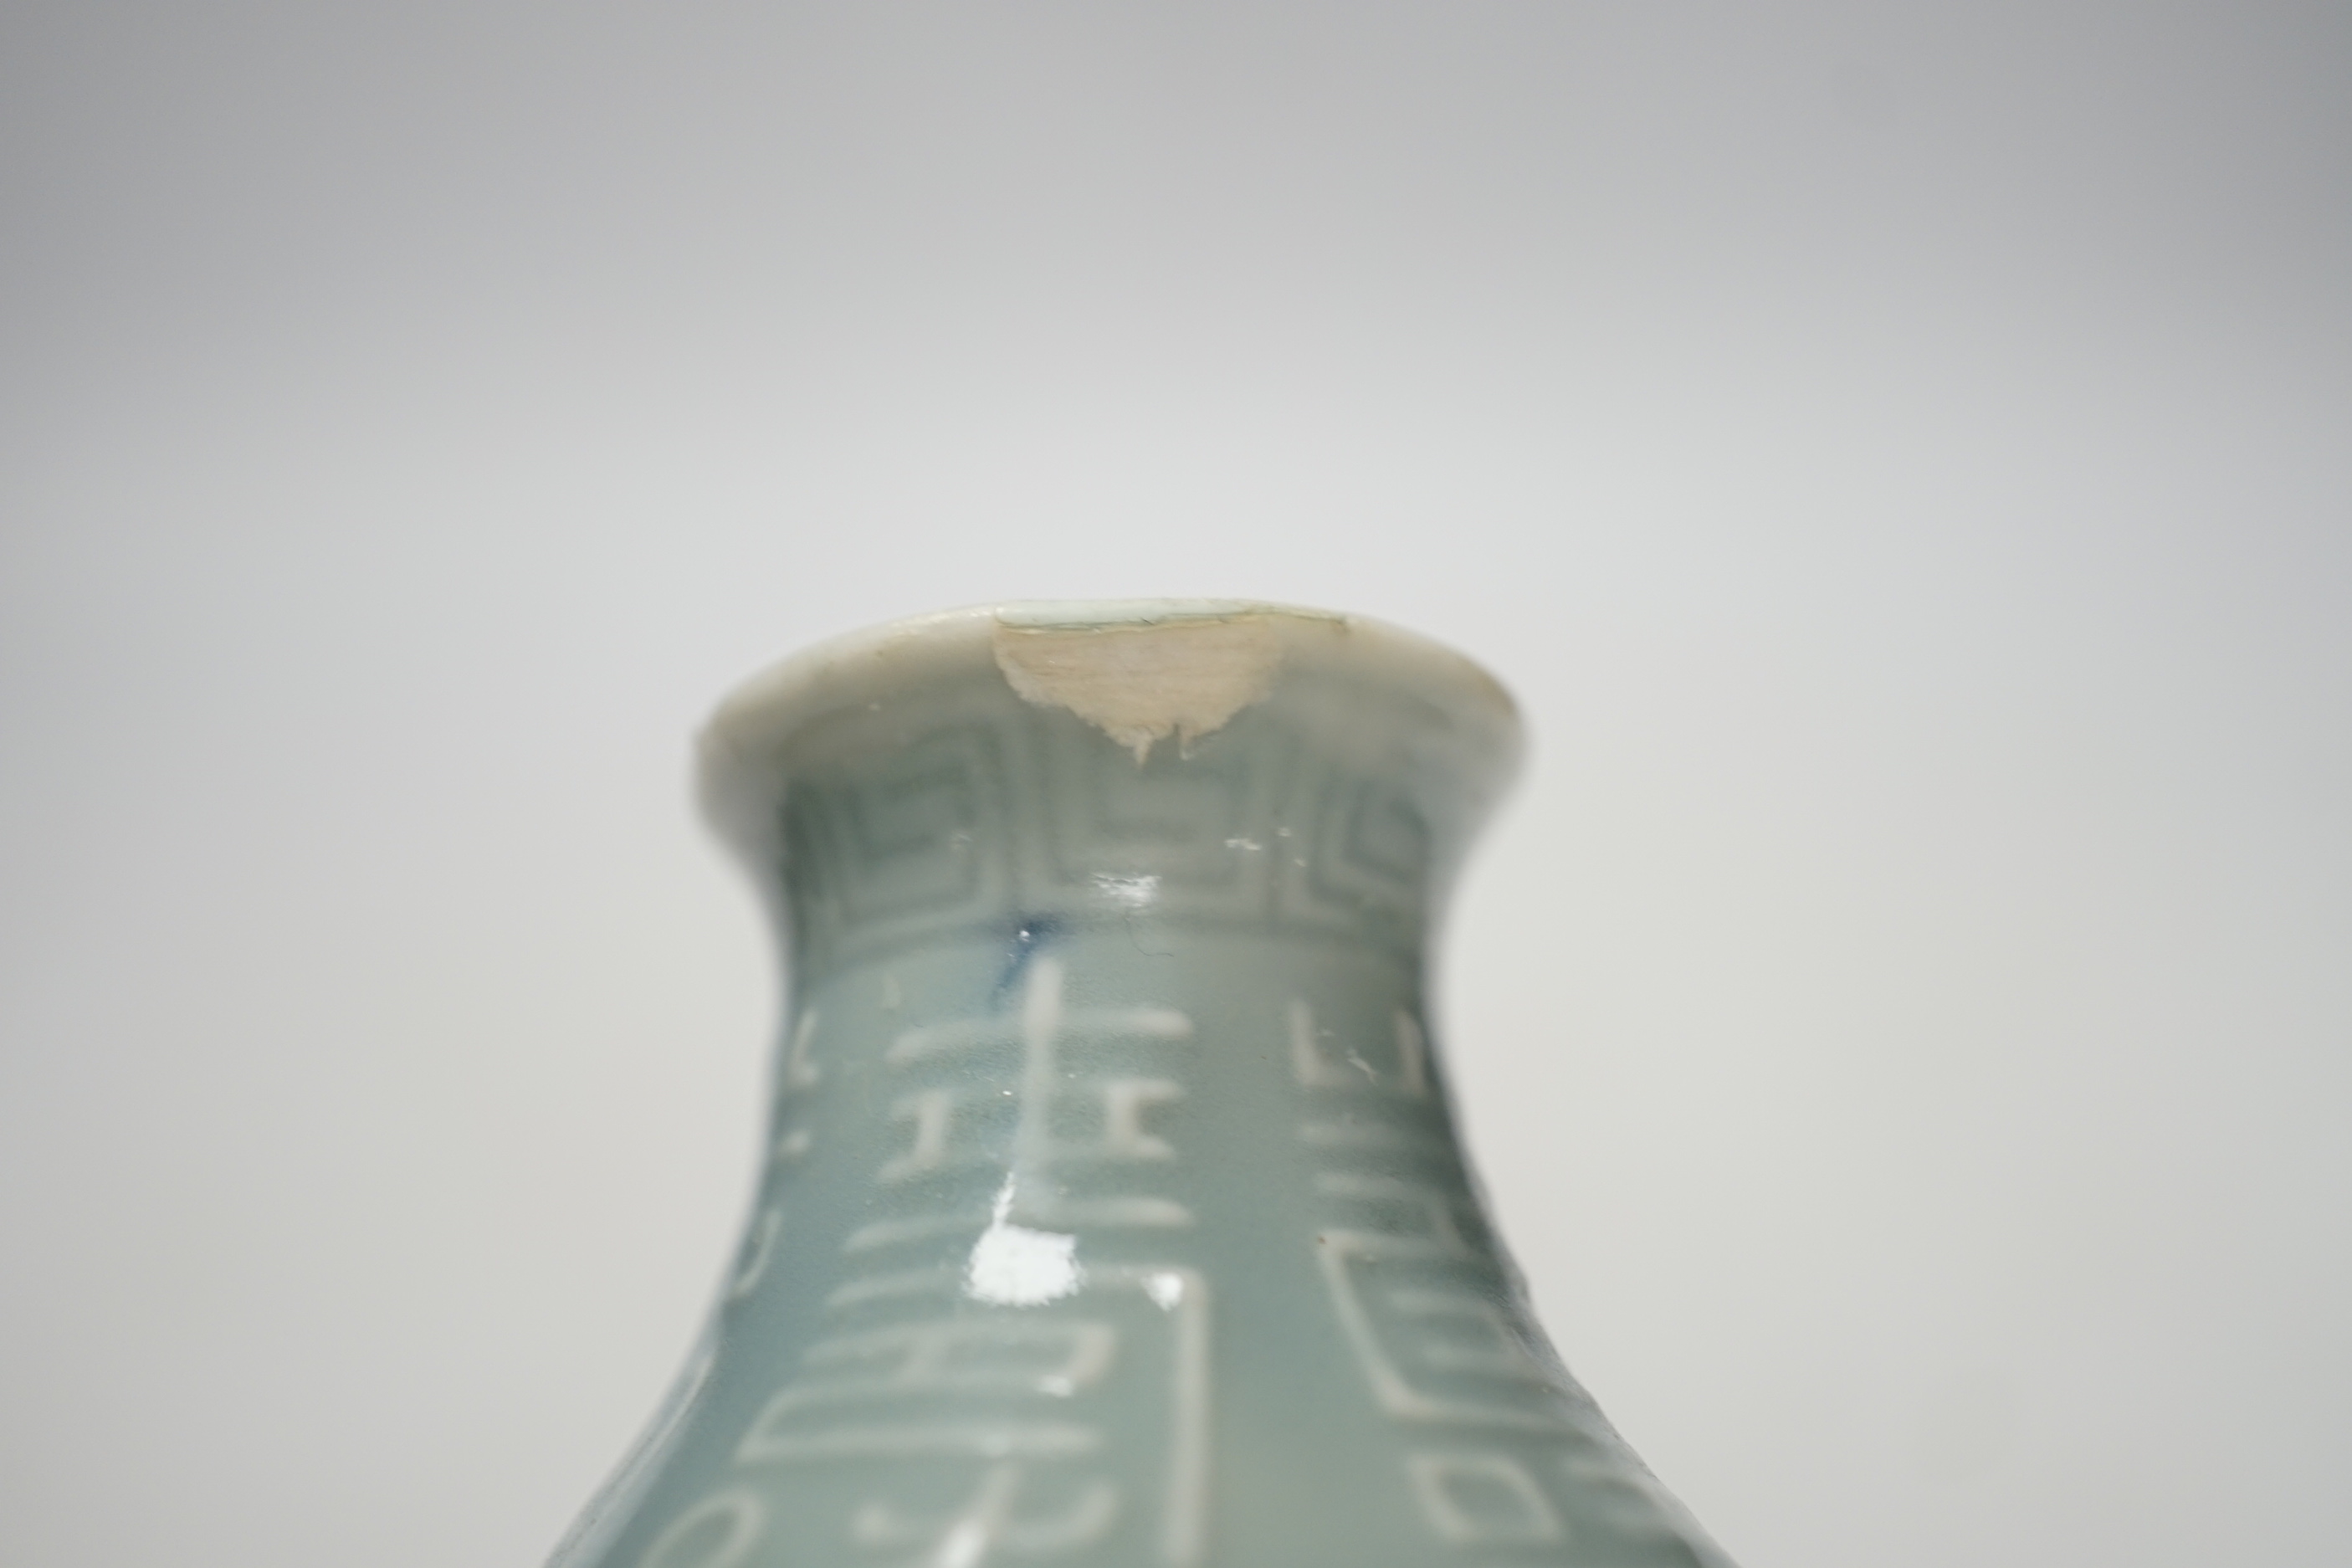 A Chinese clair de lune glazed vase, Qianlong mark, Republic, 15.5cm